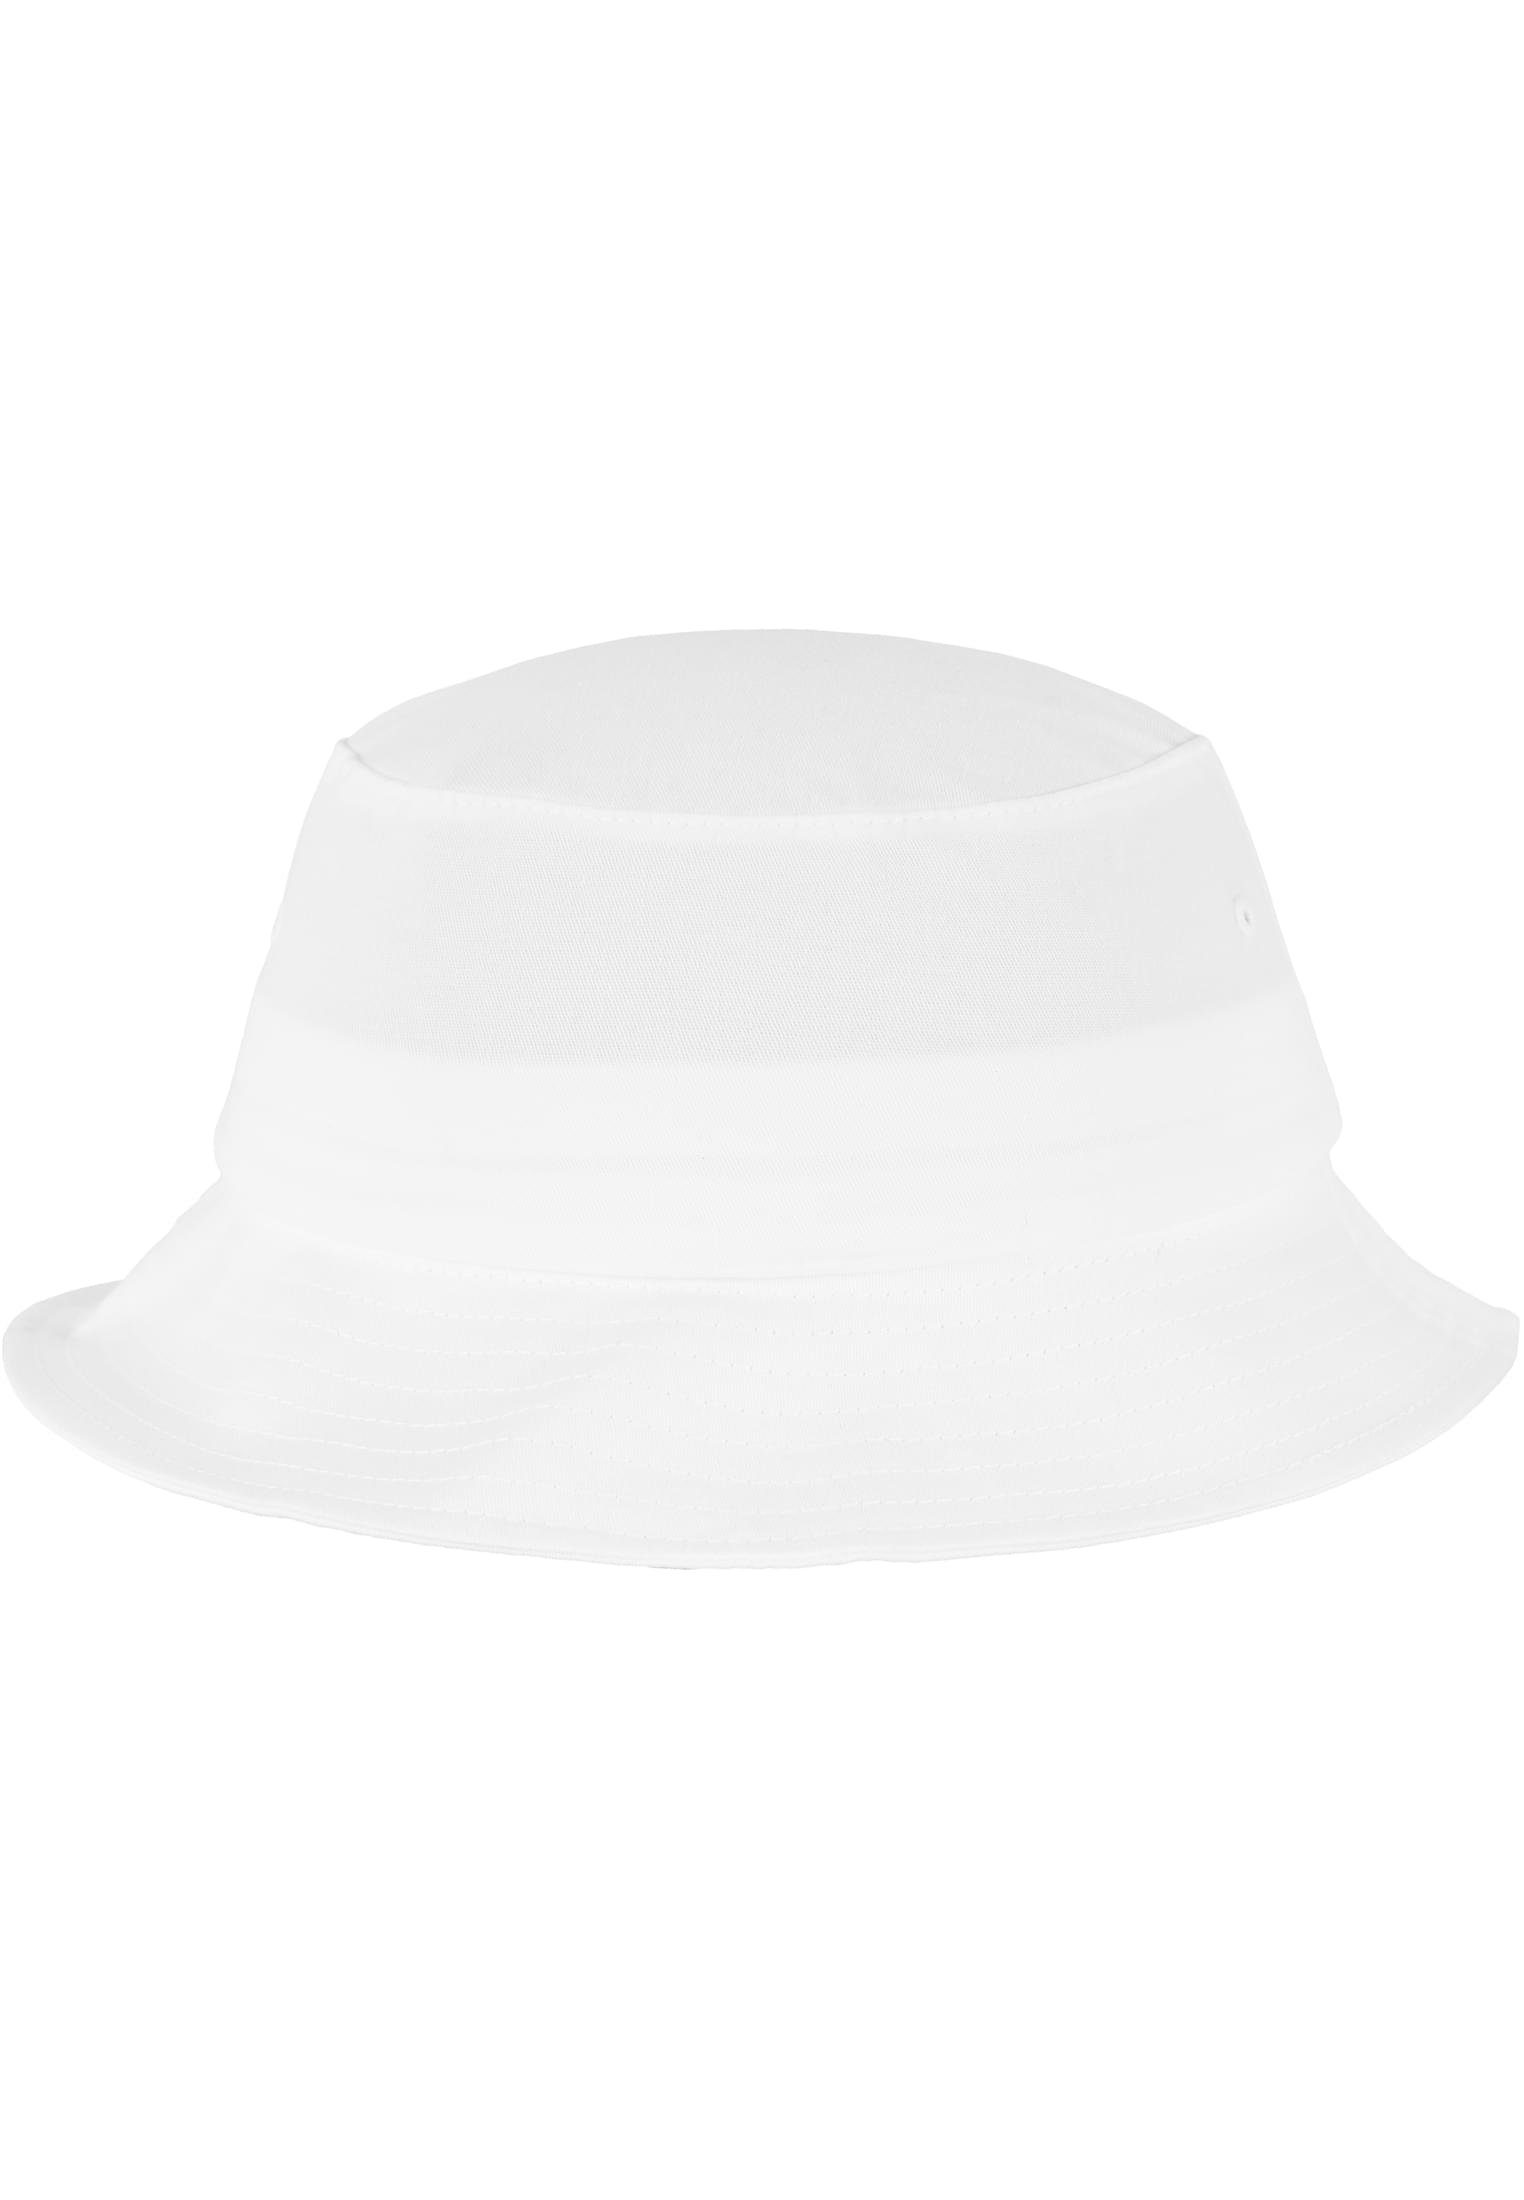 Accessoires Flex Hat Flexfit white Twill Cotton Bucket Flexfit Cap